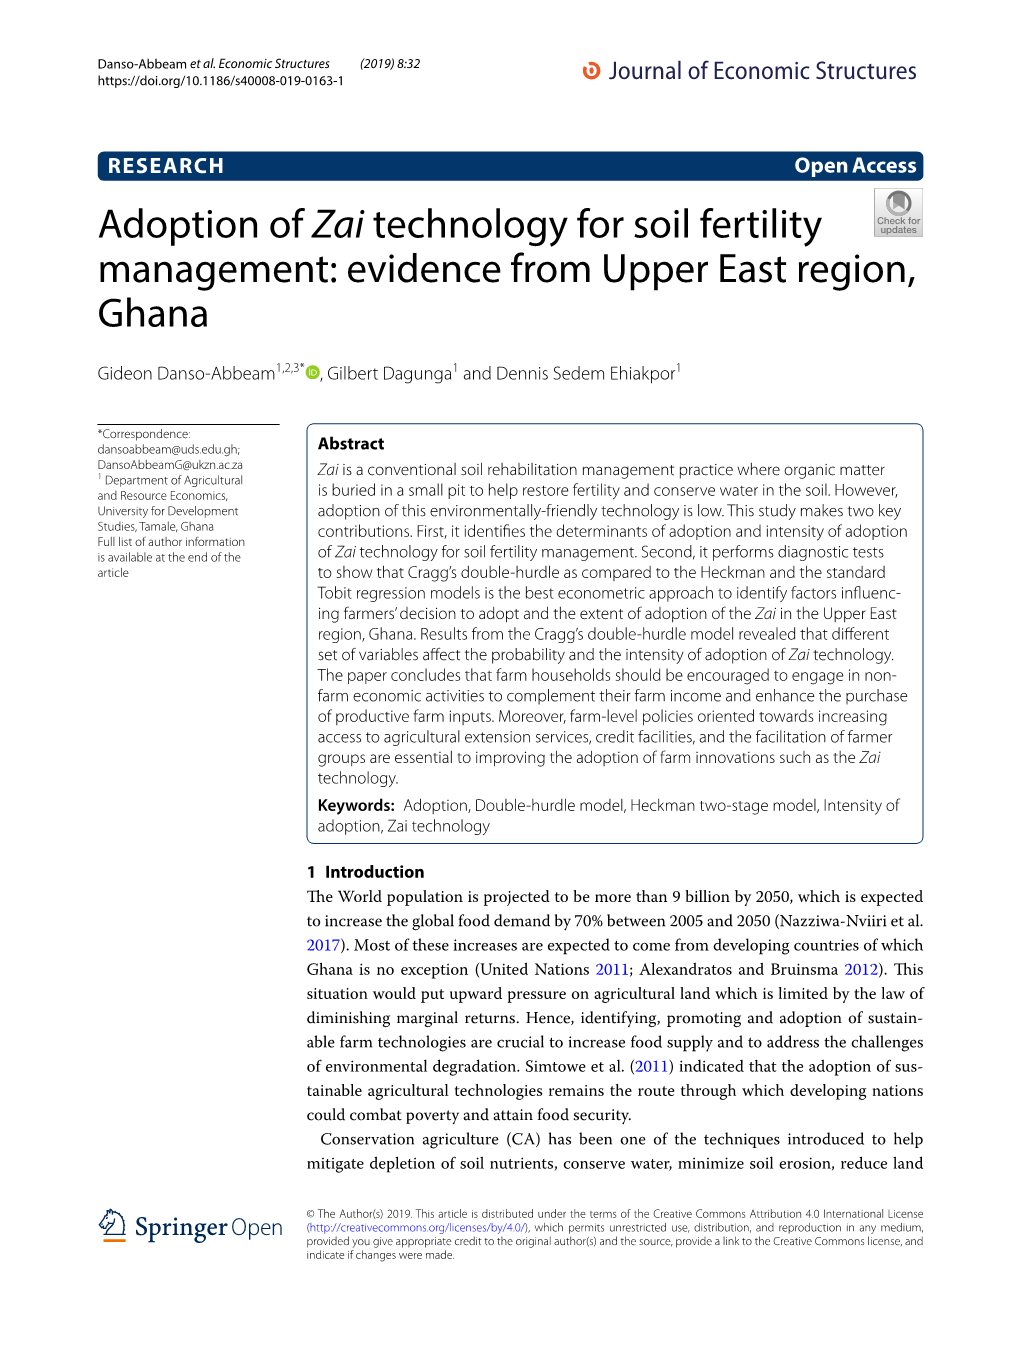 Adoption of Zai Technology for Soil Fertility Management: Evidence from Upper East Region, Ghana